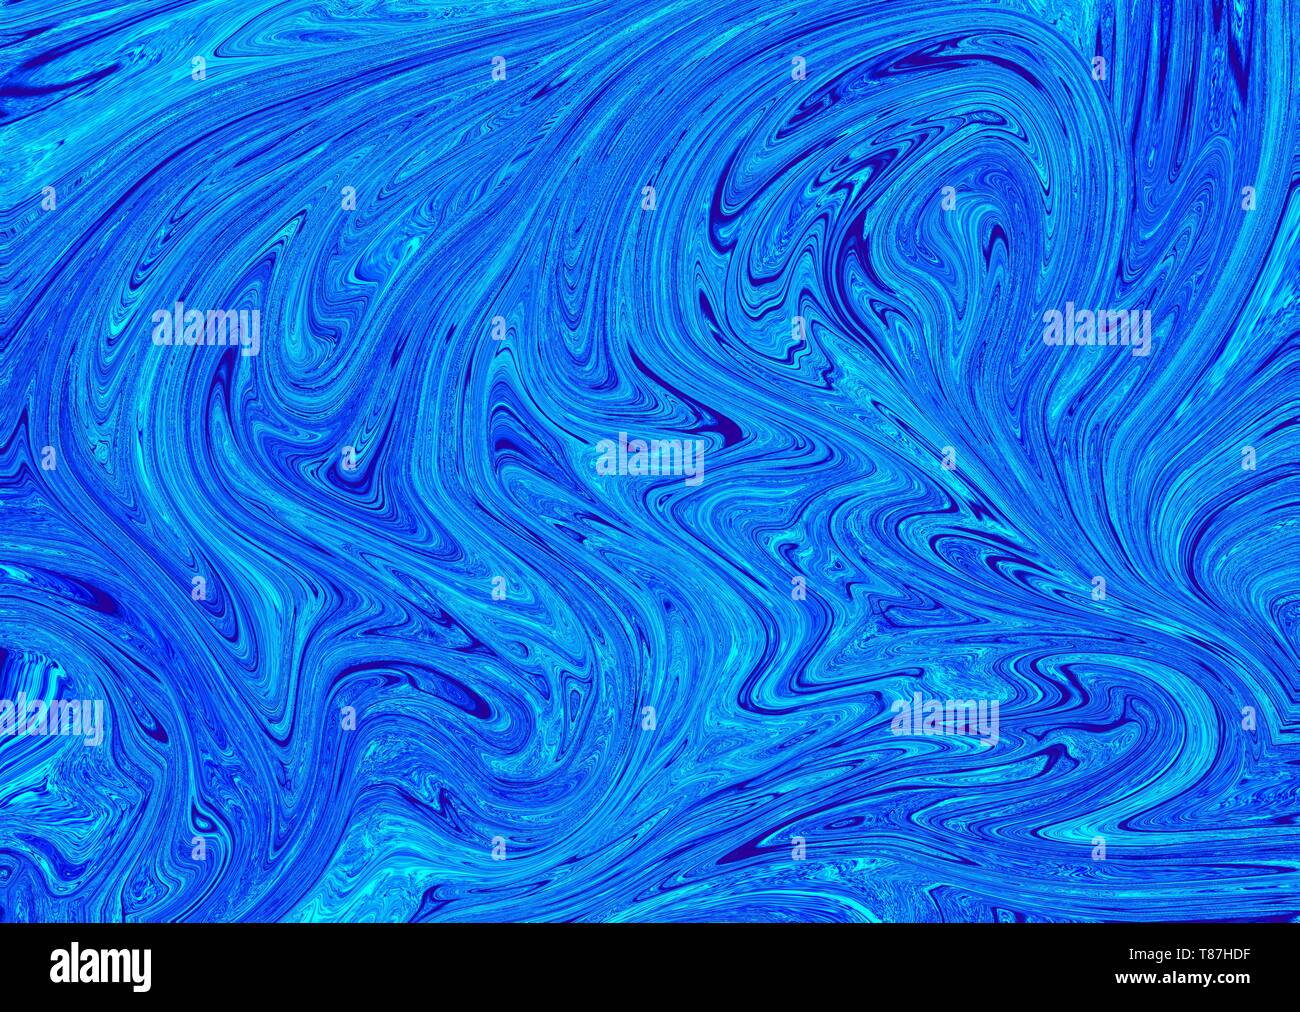 Abstrakte flüssige Textur oder Hintergrund mit mehreren Farben gemischt  Stockfotografie - Alamy